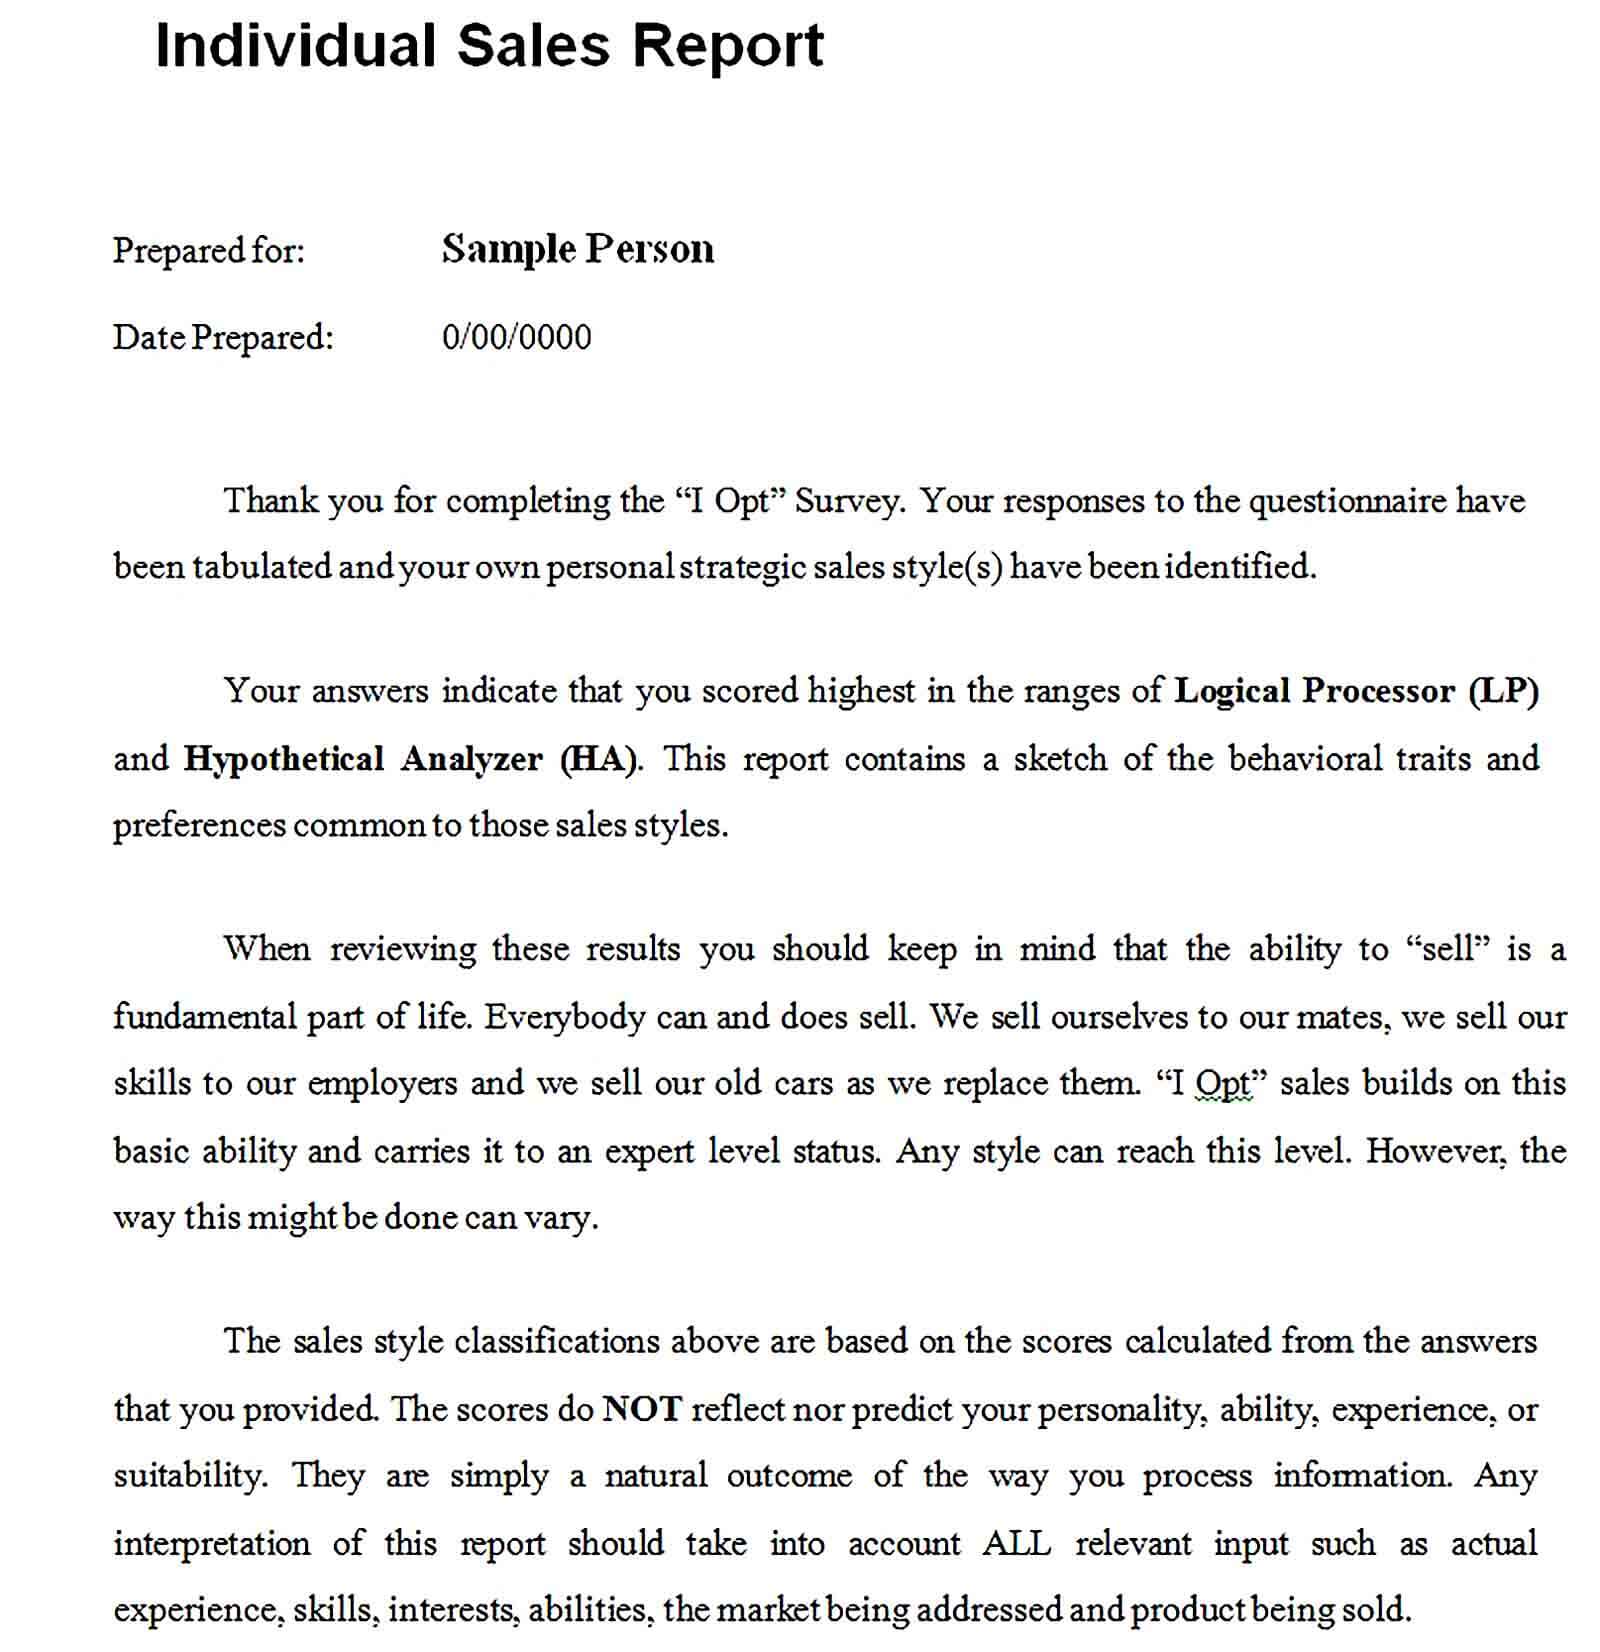 Sample Individual Sales Report